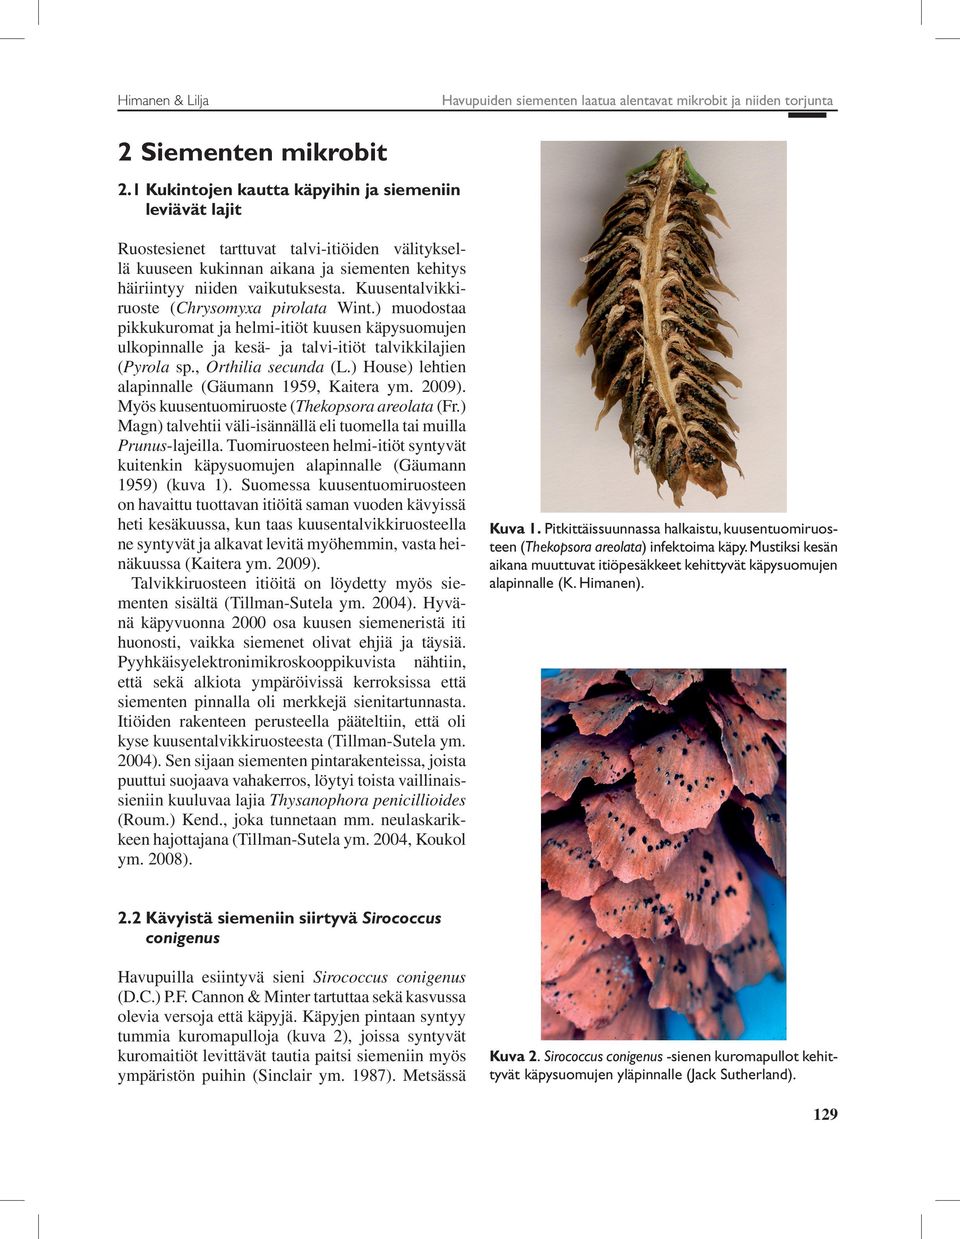 Kuusentalvikkiruoste (Chrysomyxa pirolata Wint.) muodostaa pikkukuromat ja helmi-itiöt kuusen käpysuomujen ulkopinnalle ja kesä- ja talvi-itiöt talvikkilajien (Pyrola sp., Orthilia secunda (L.